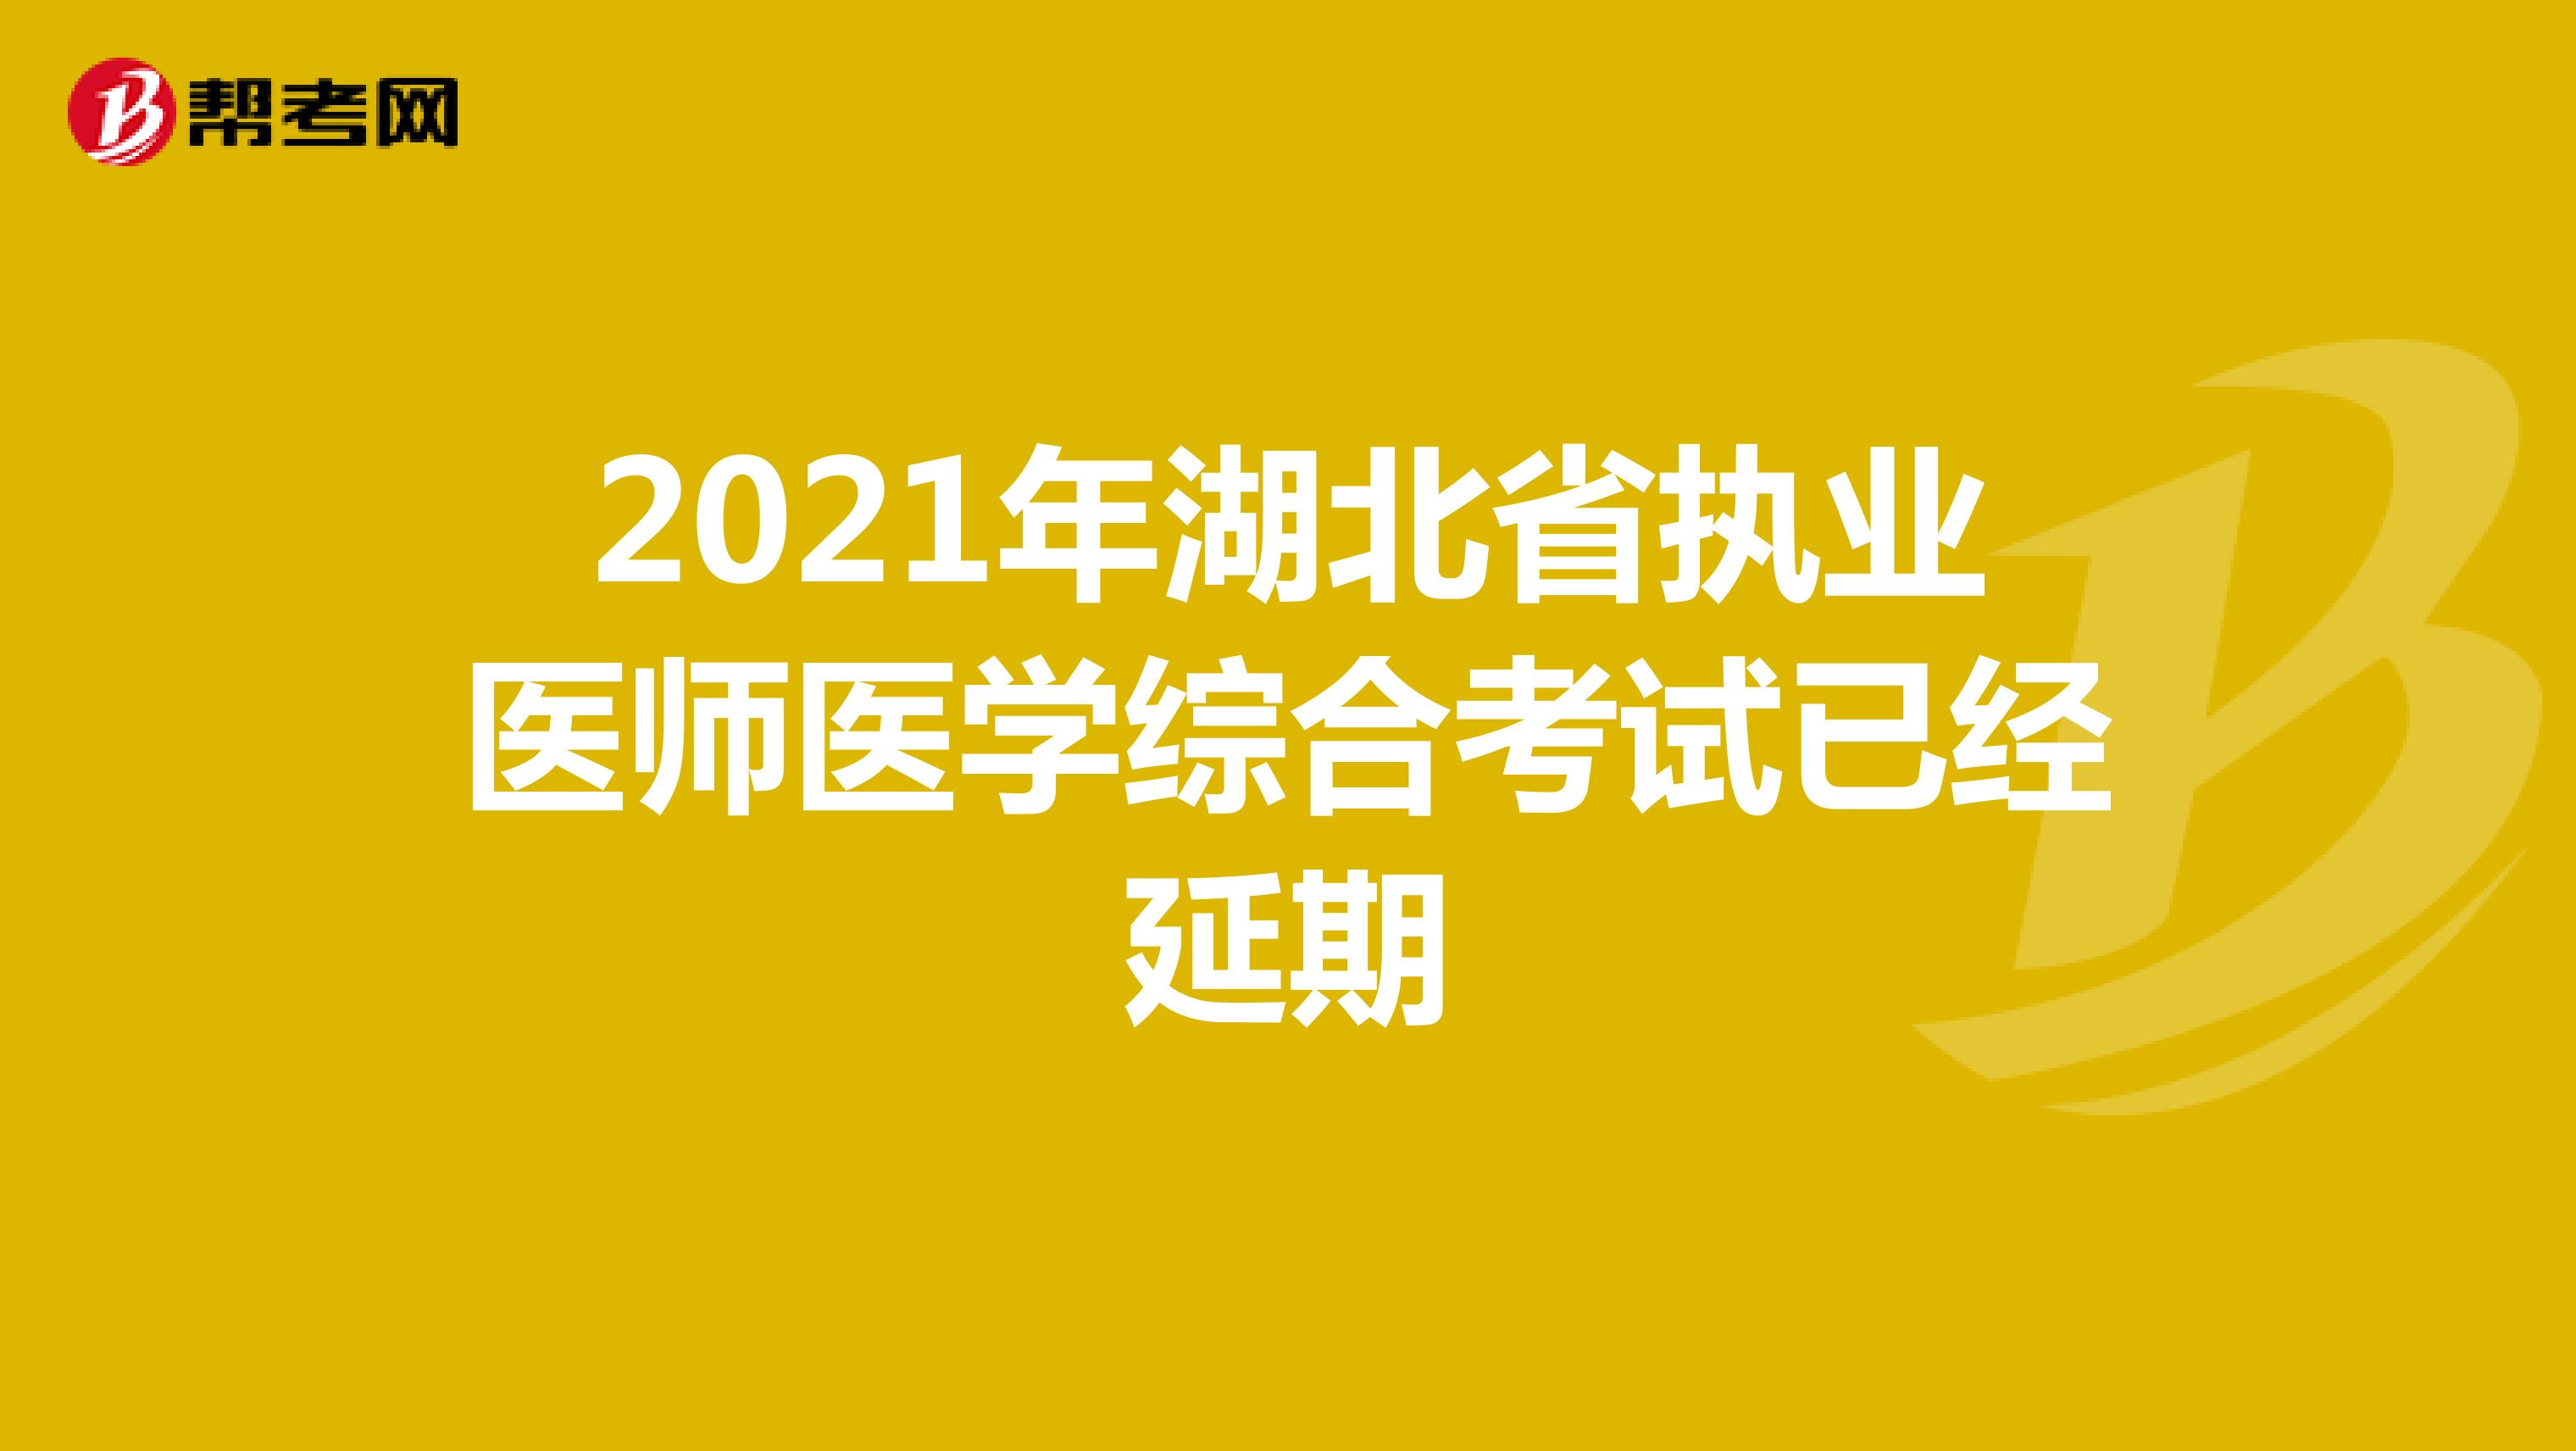 2021年湖北省执业医师医学综合考试已经延期